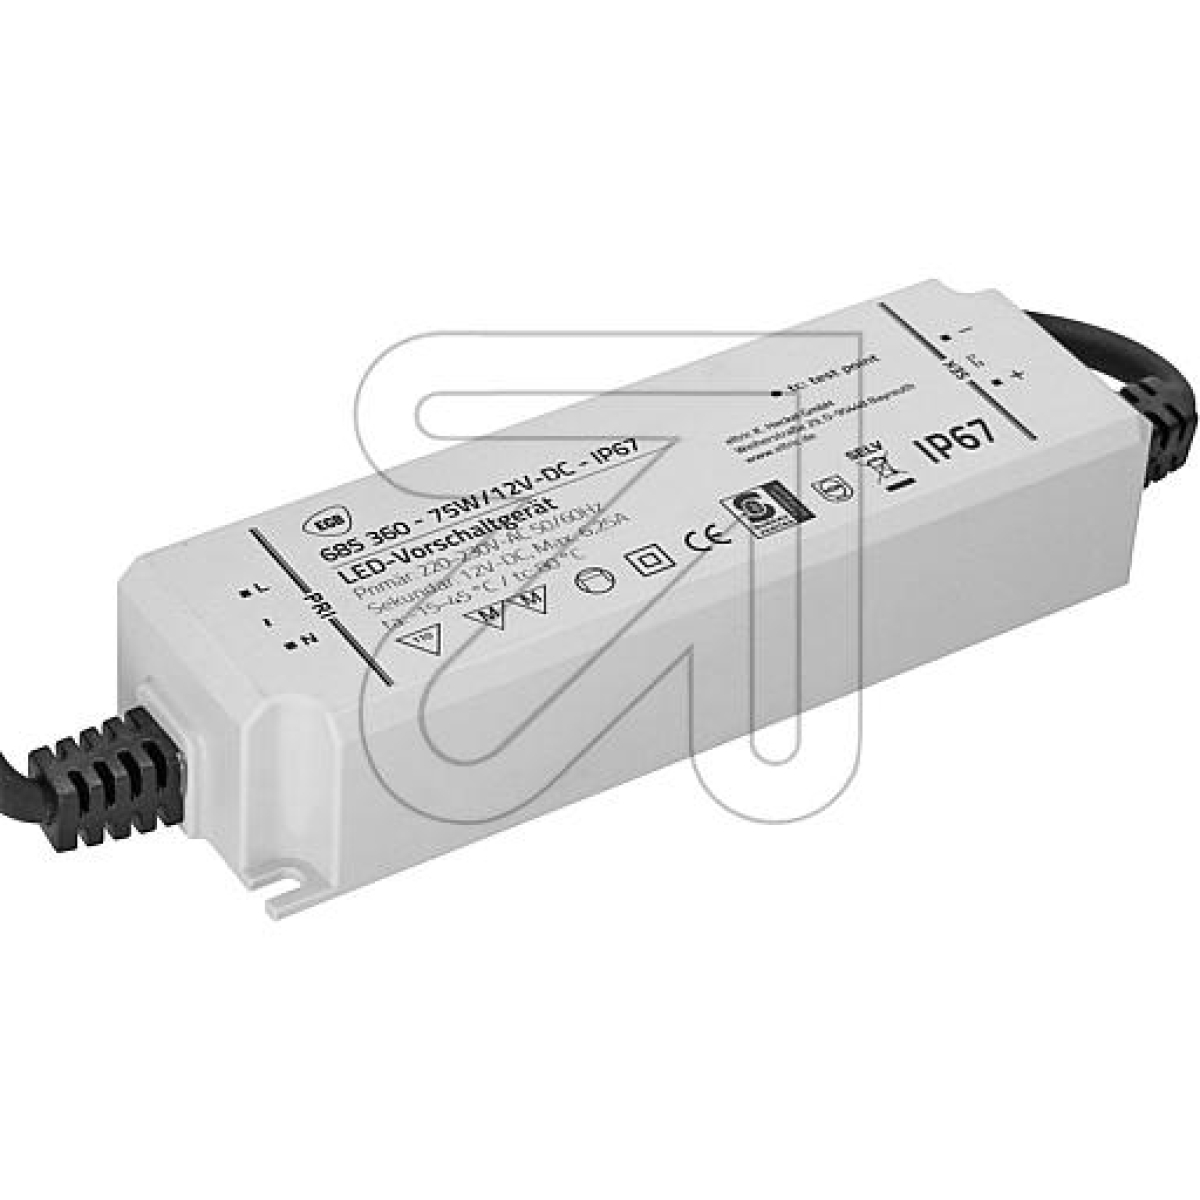 EGBVorschaltgerät IP67 75W für LED-Stripes 12V-DCArtikel-Nr: 685360